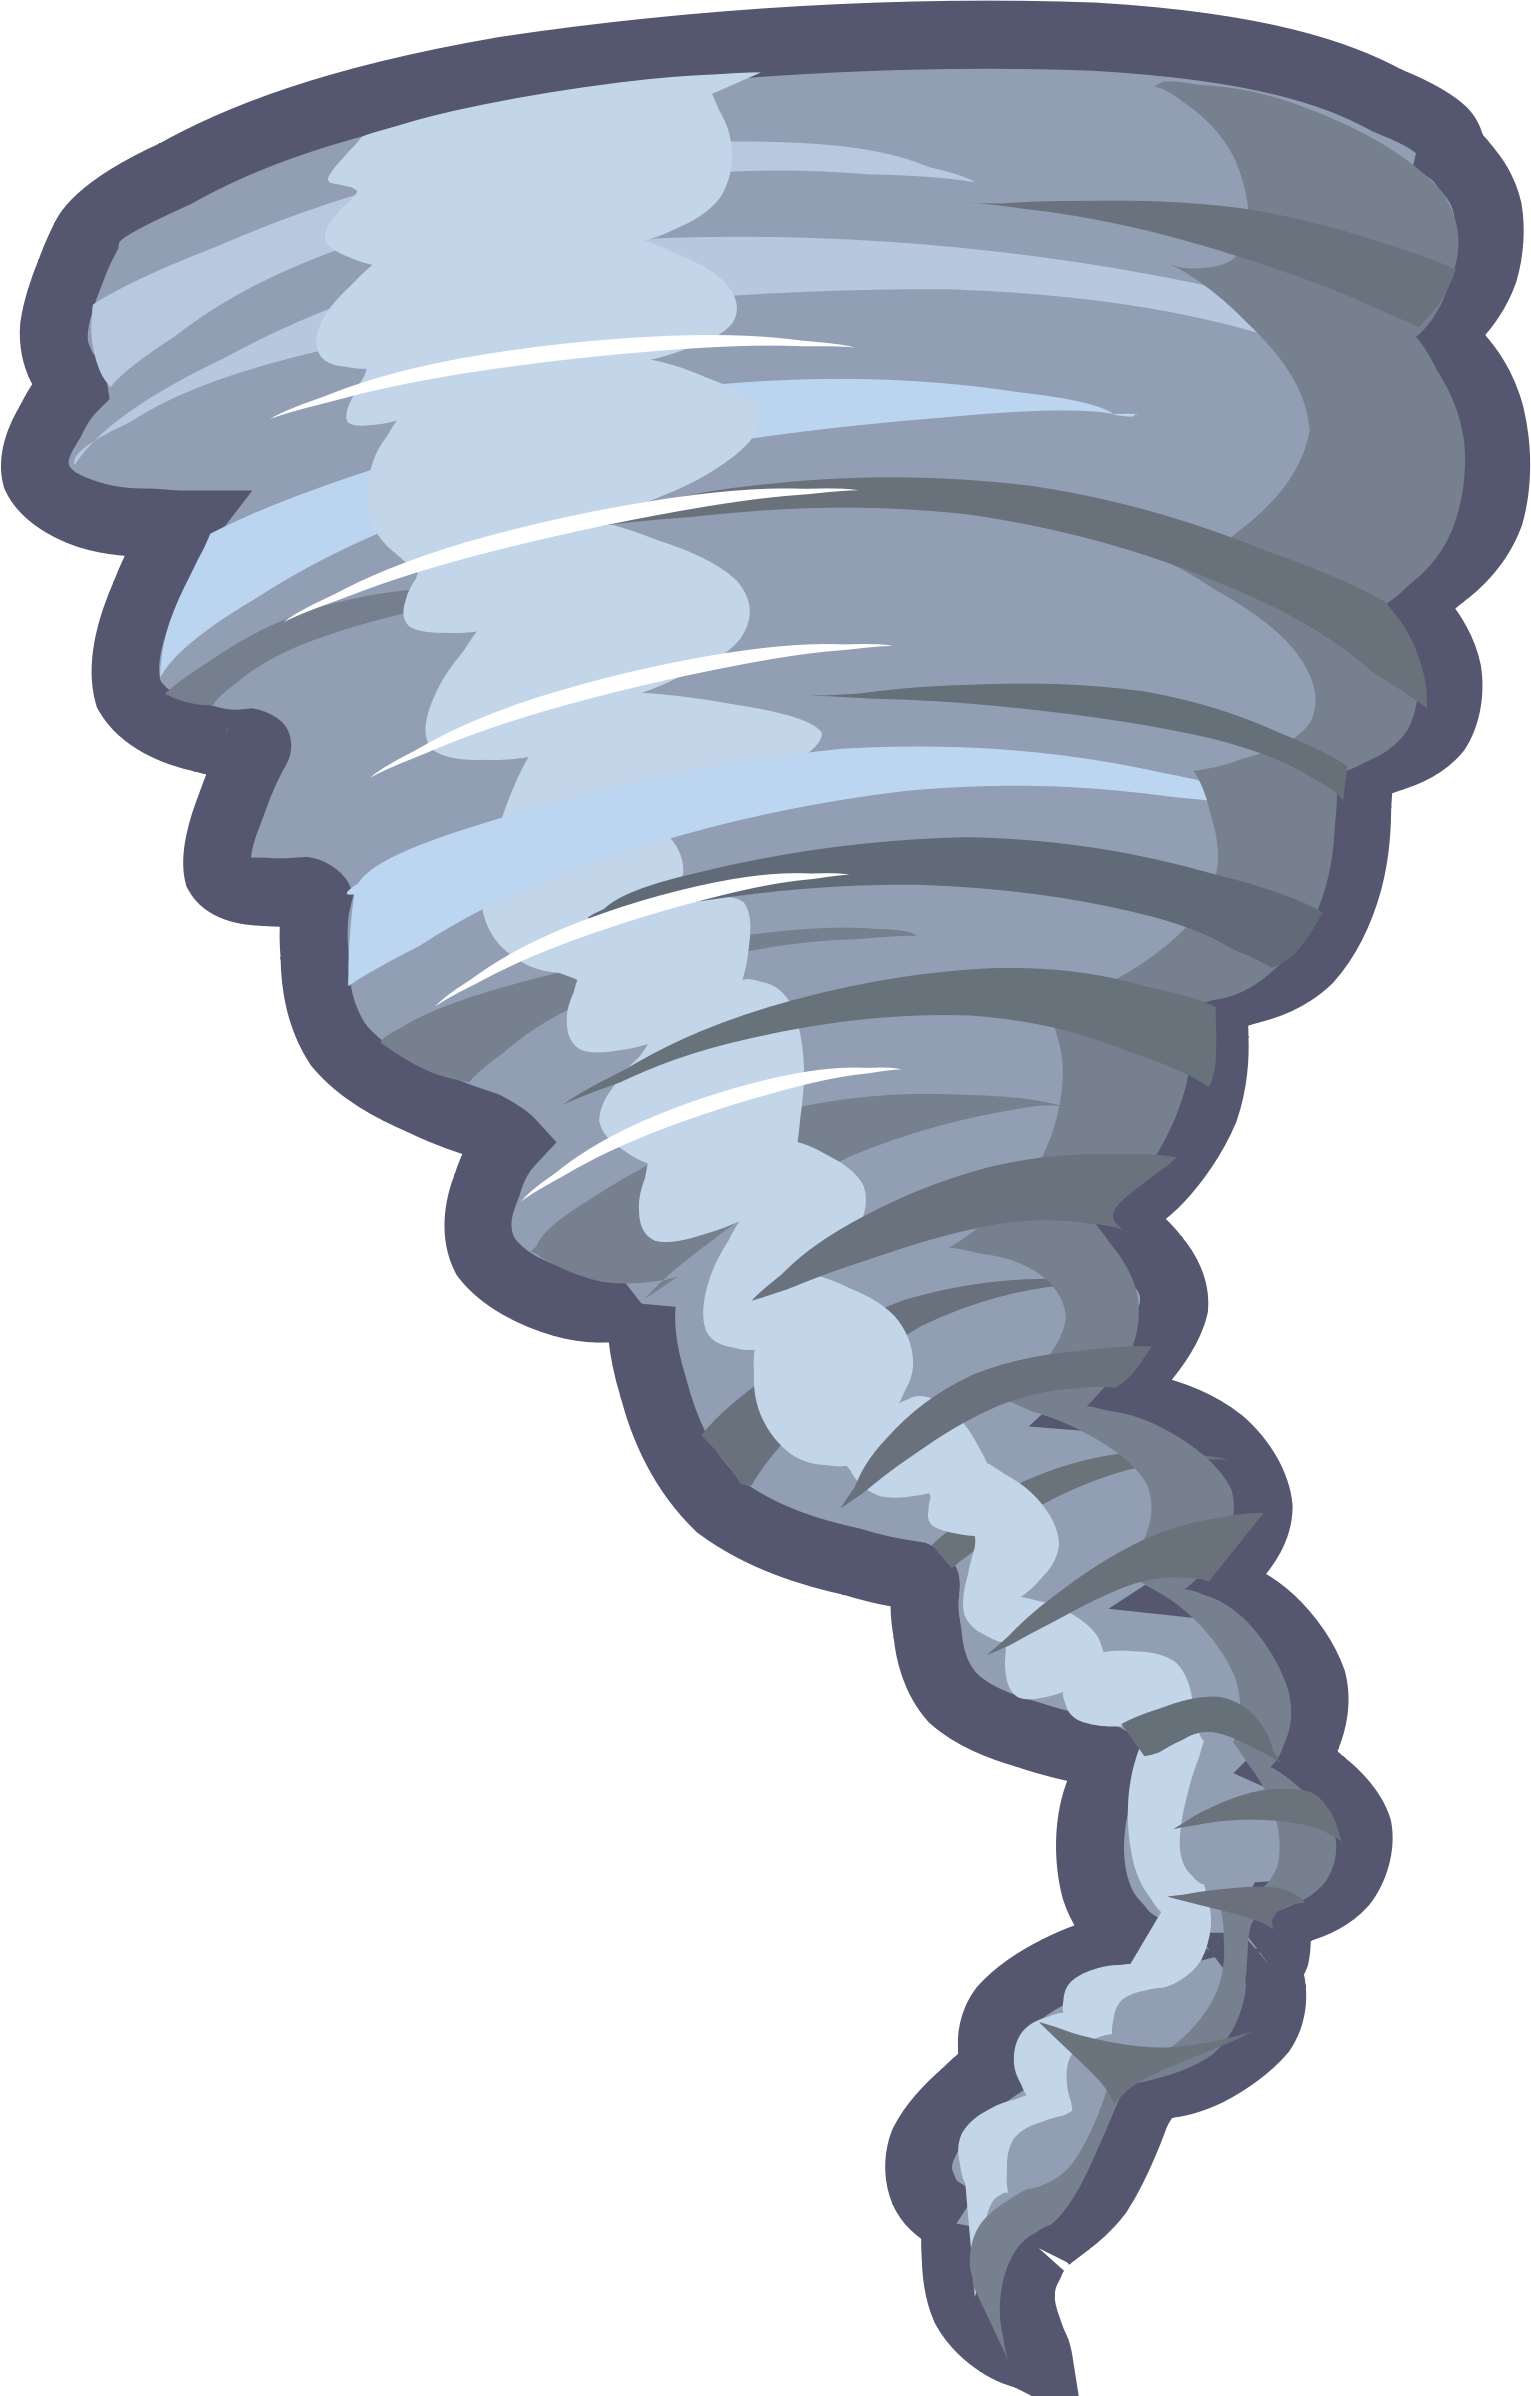 Download Tornado Clipart HQ PNG Image FreePNGImg.